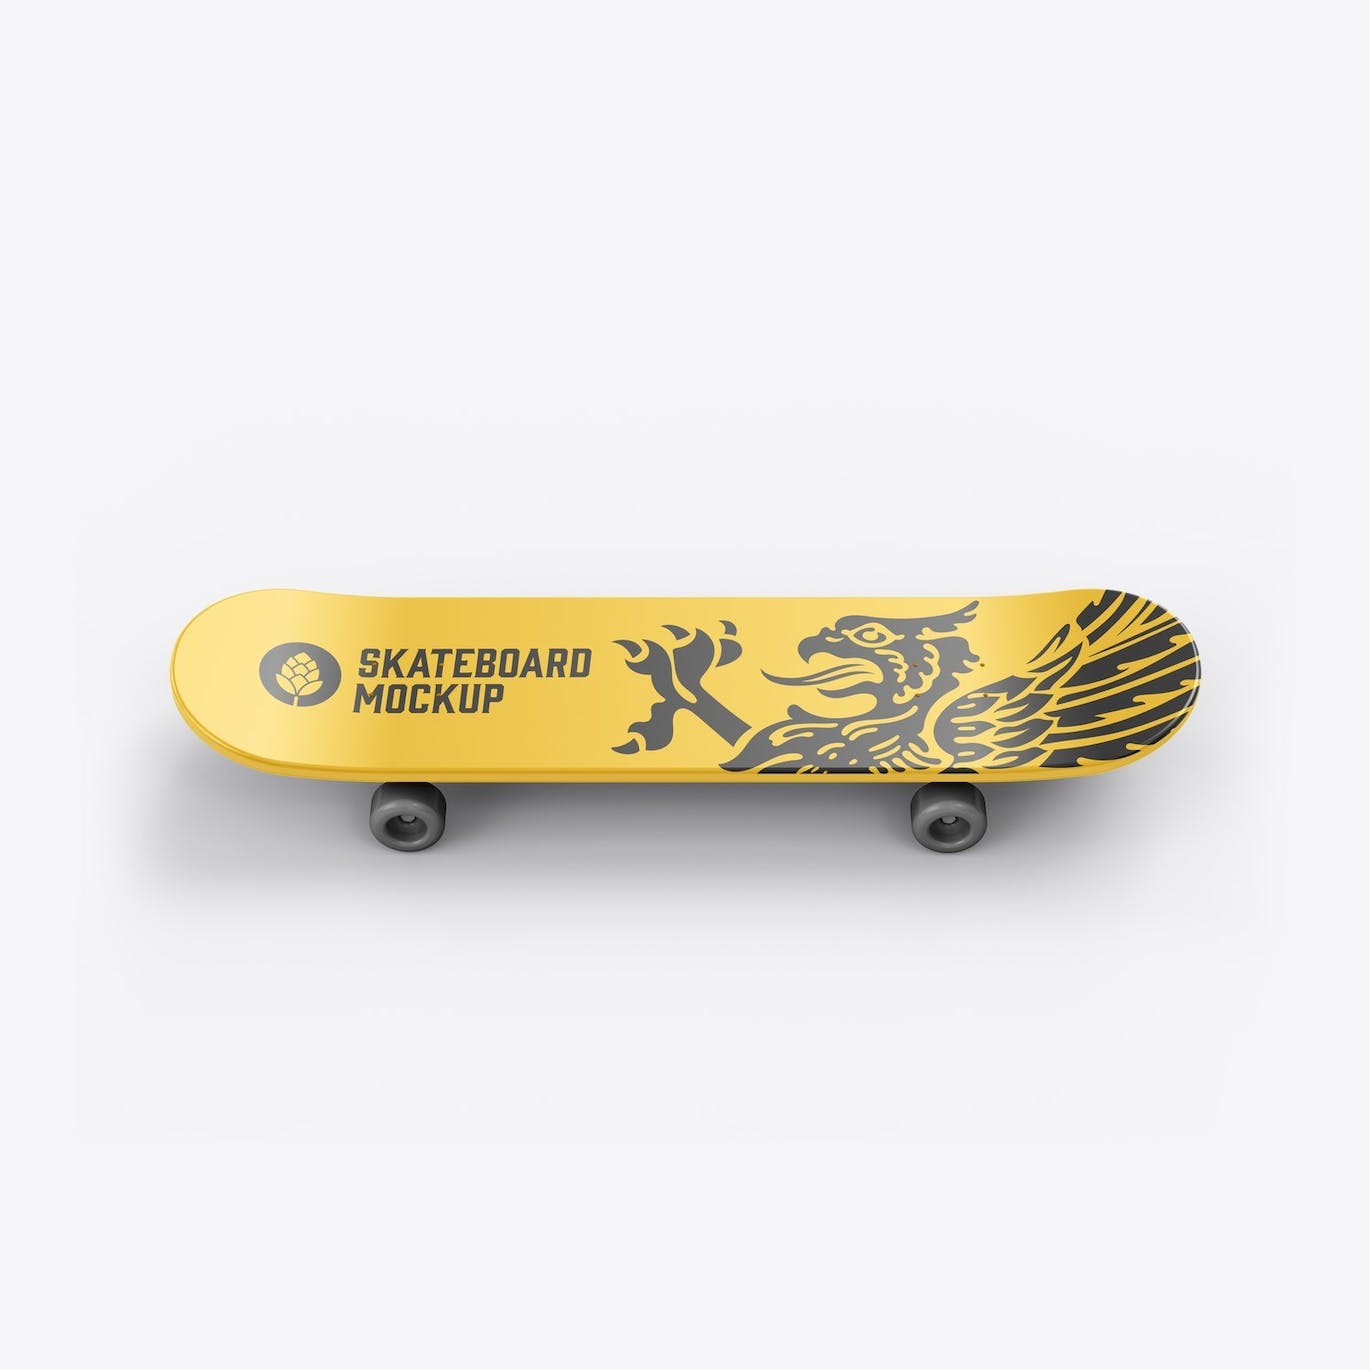 骑行滑板品牌设计样机 Skateboard Mockup 样机素材 第5张